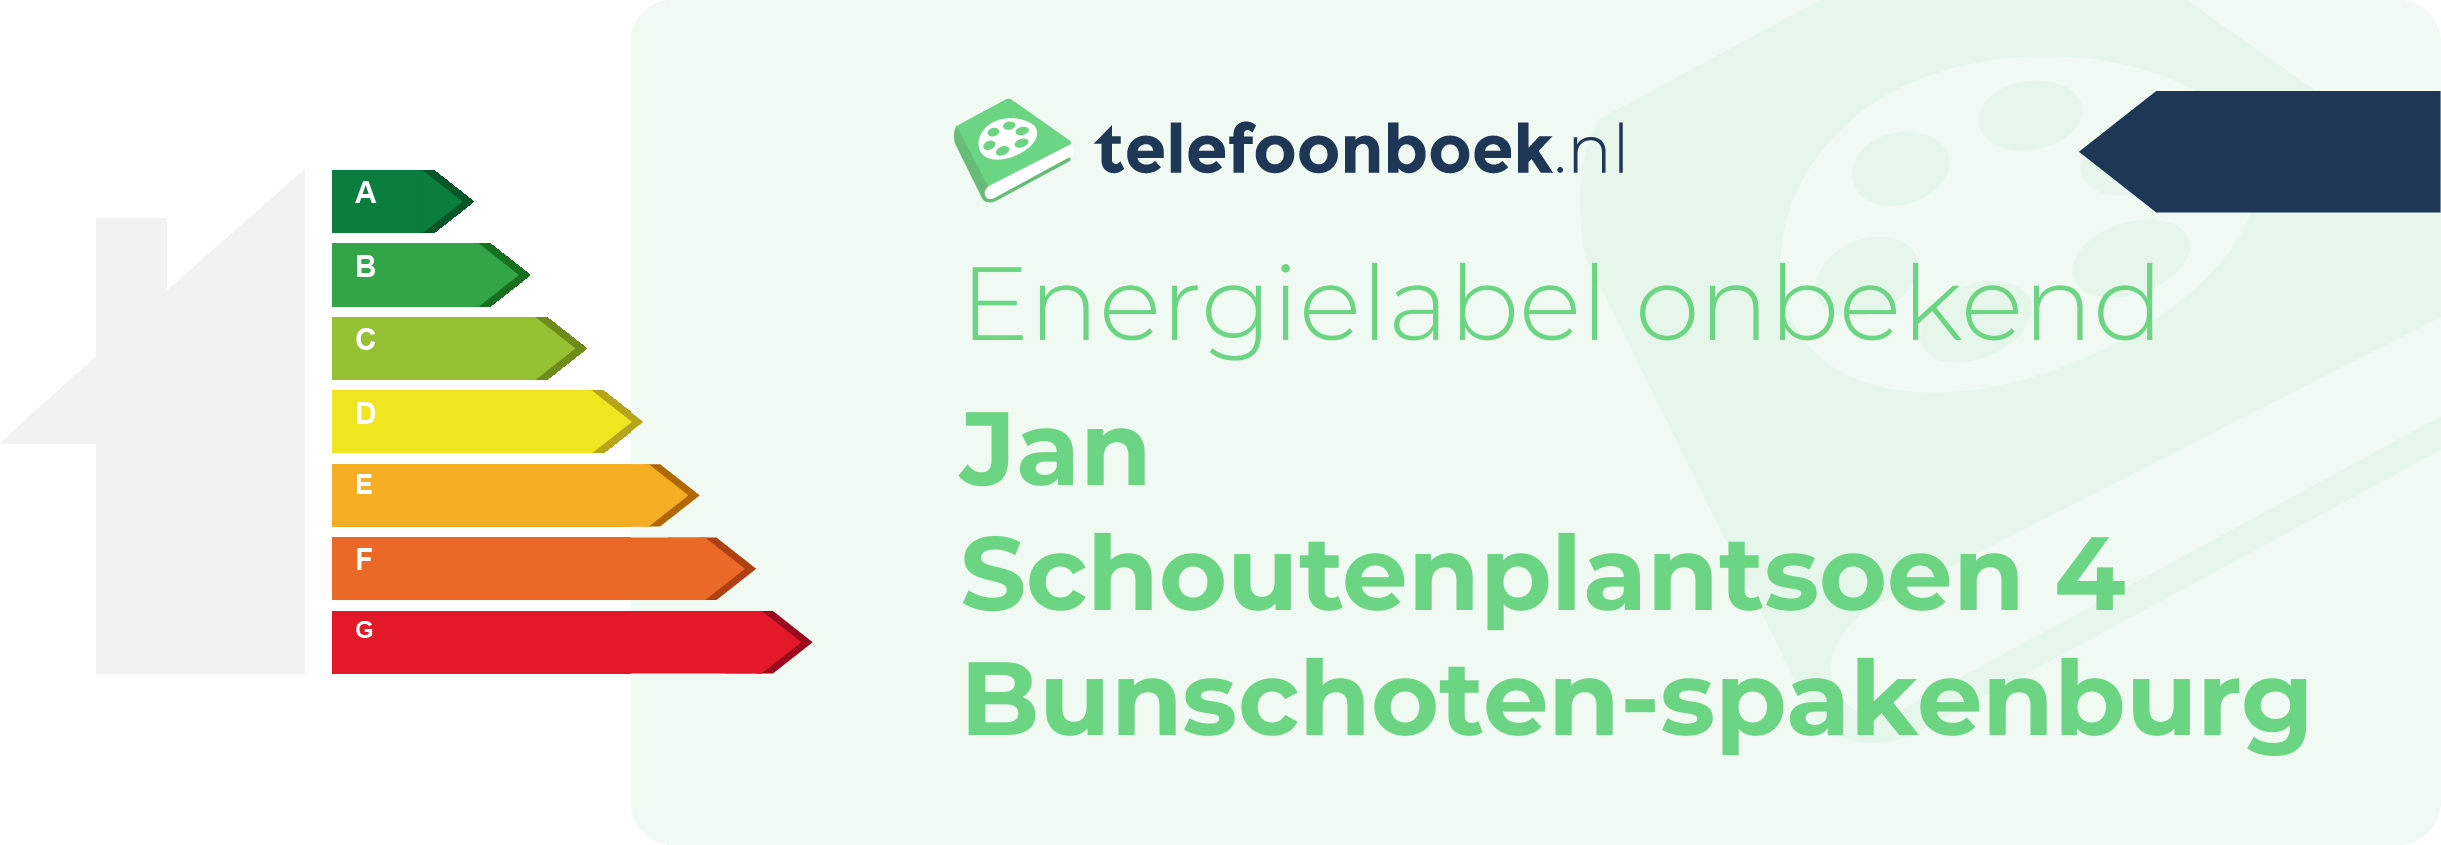 Energielabel Jan Schoutenplantsoen 4 Bunschoten-Spakenburg